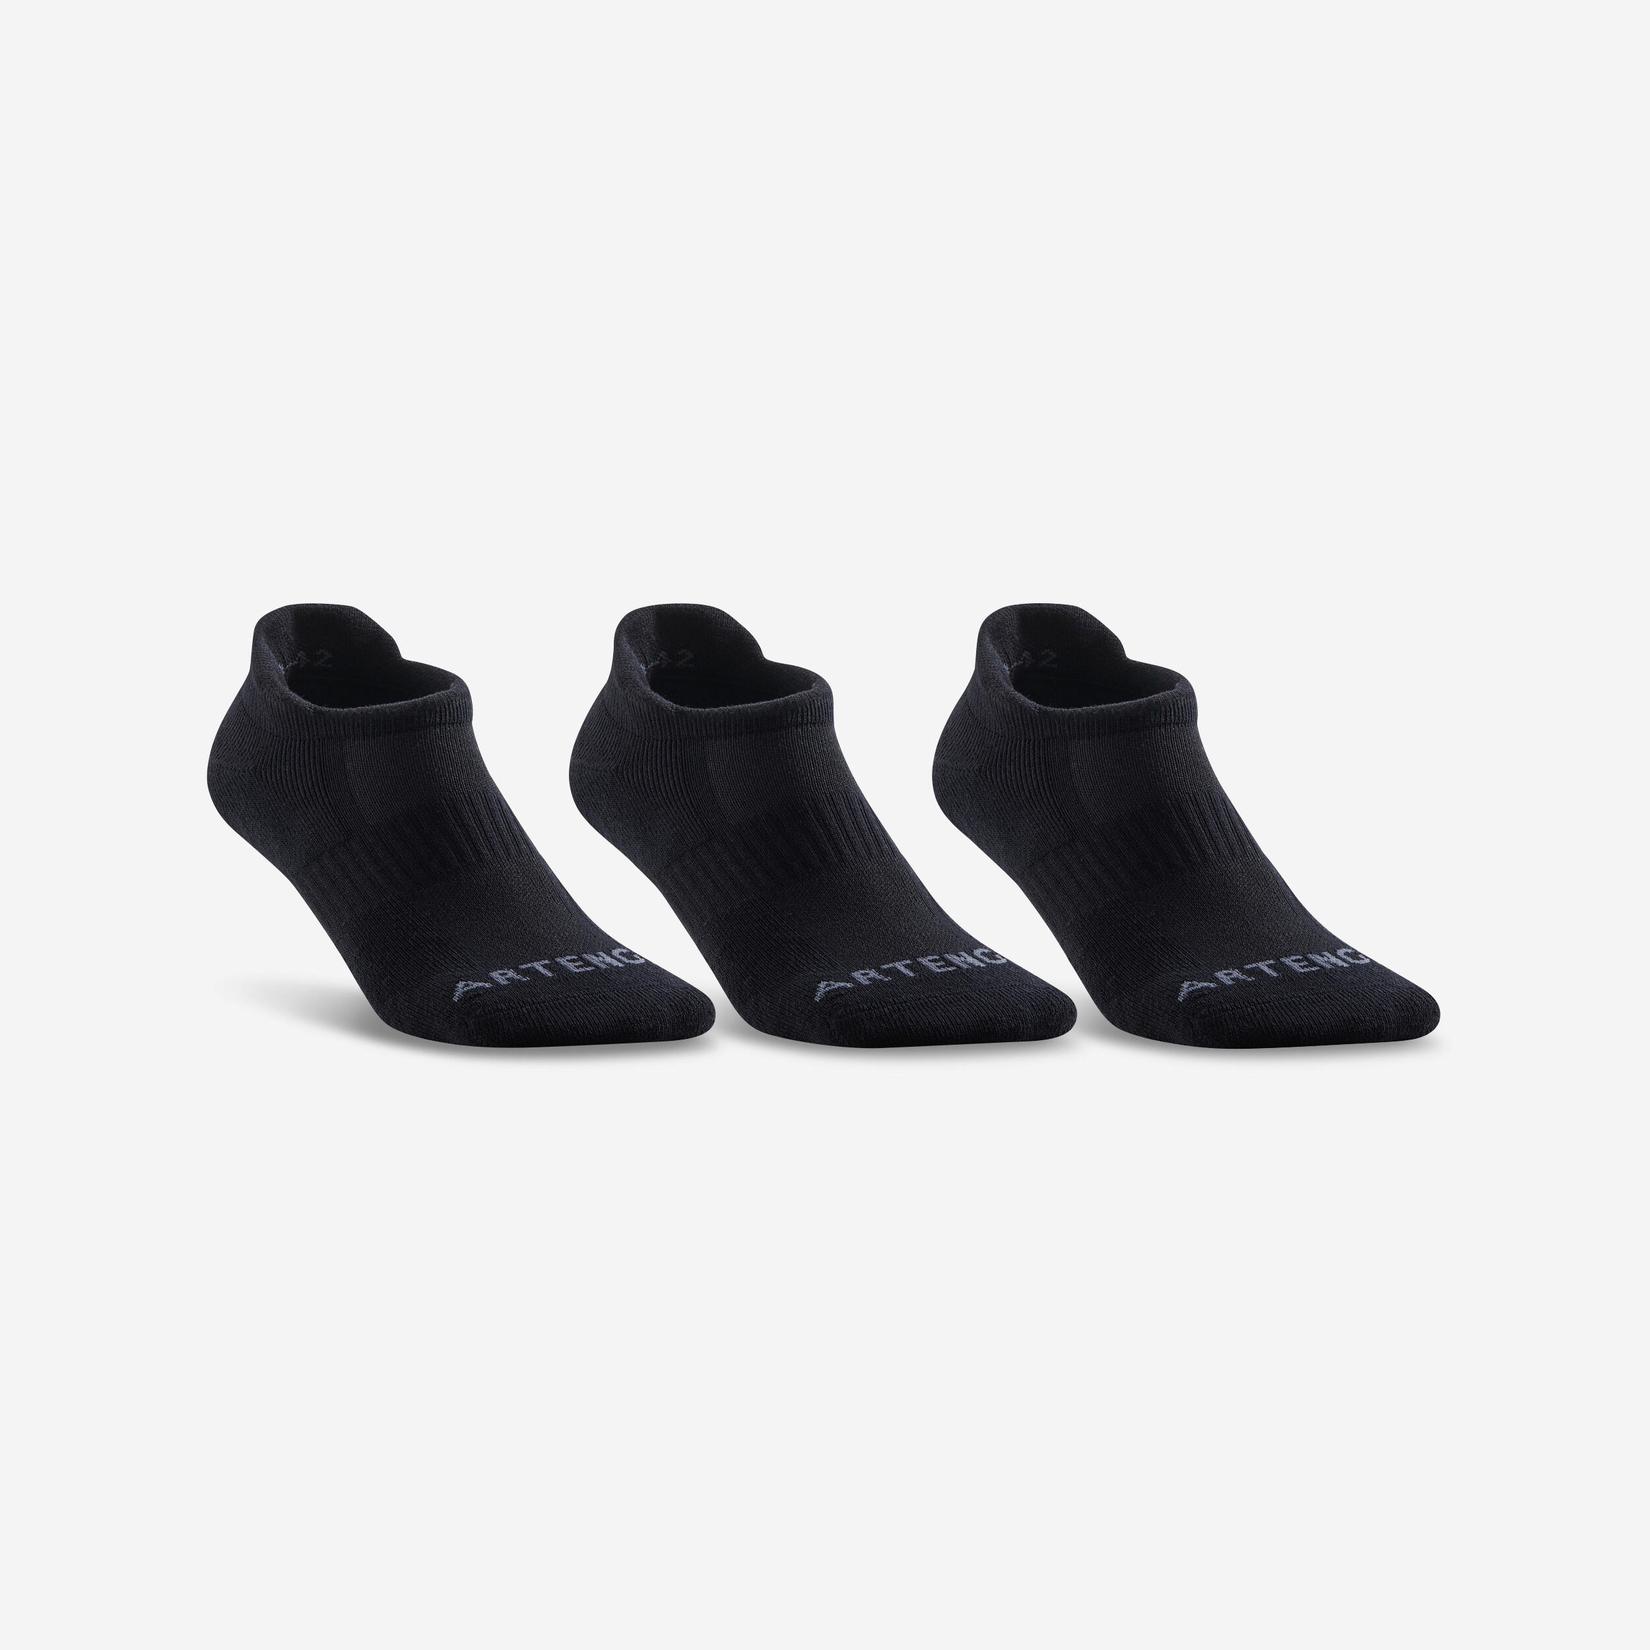 Προσφορά Χαμηλές αθλητικές κάλτσες RS 500 3 ζεύγη - Μαύρο για 8€ σε Decathlon